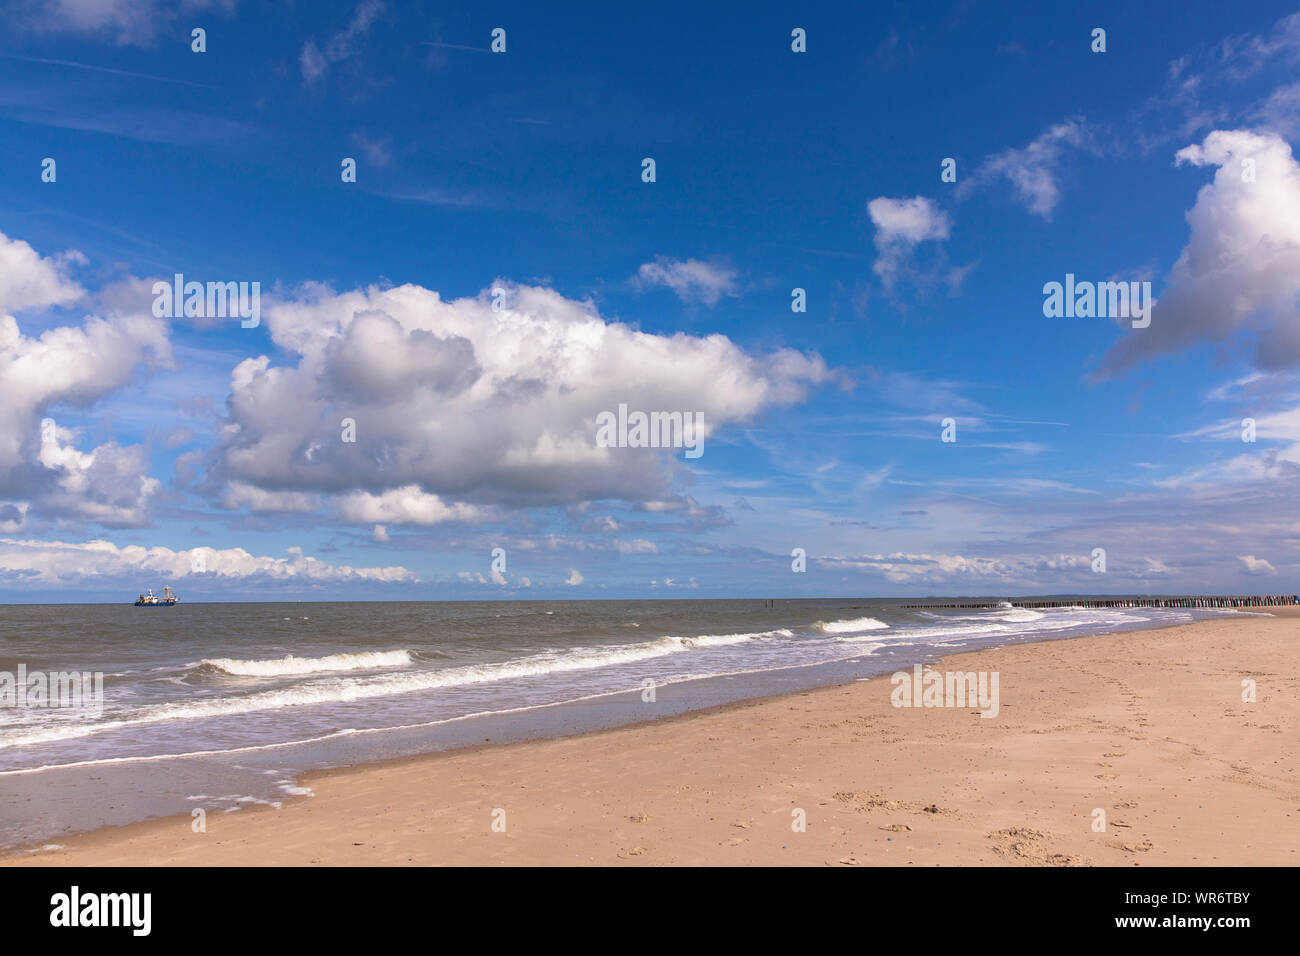 La plage de Domburg sur la presqu'île de Walcheren, Zélande, Pays-Bas.  Strand von Domburg Walcheren auf, Zélande, Pays-Bas Photo Stock - Alamy